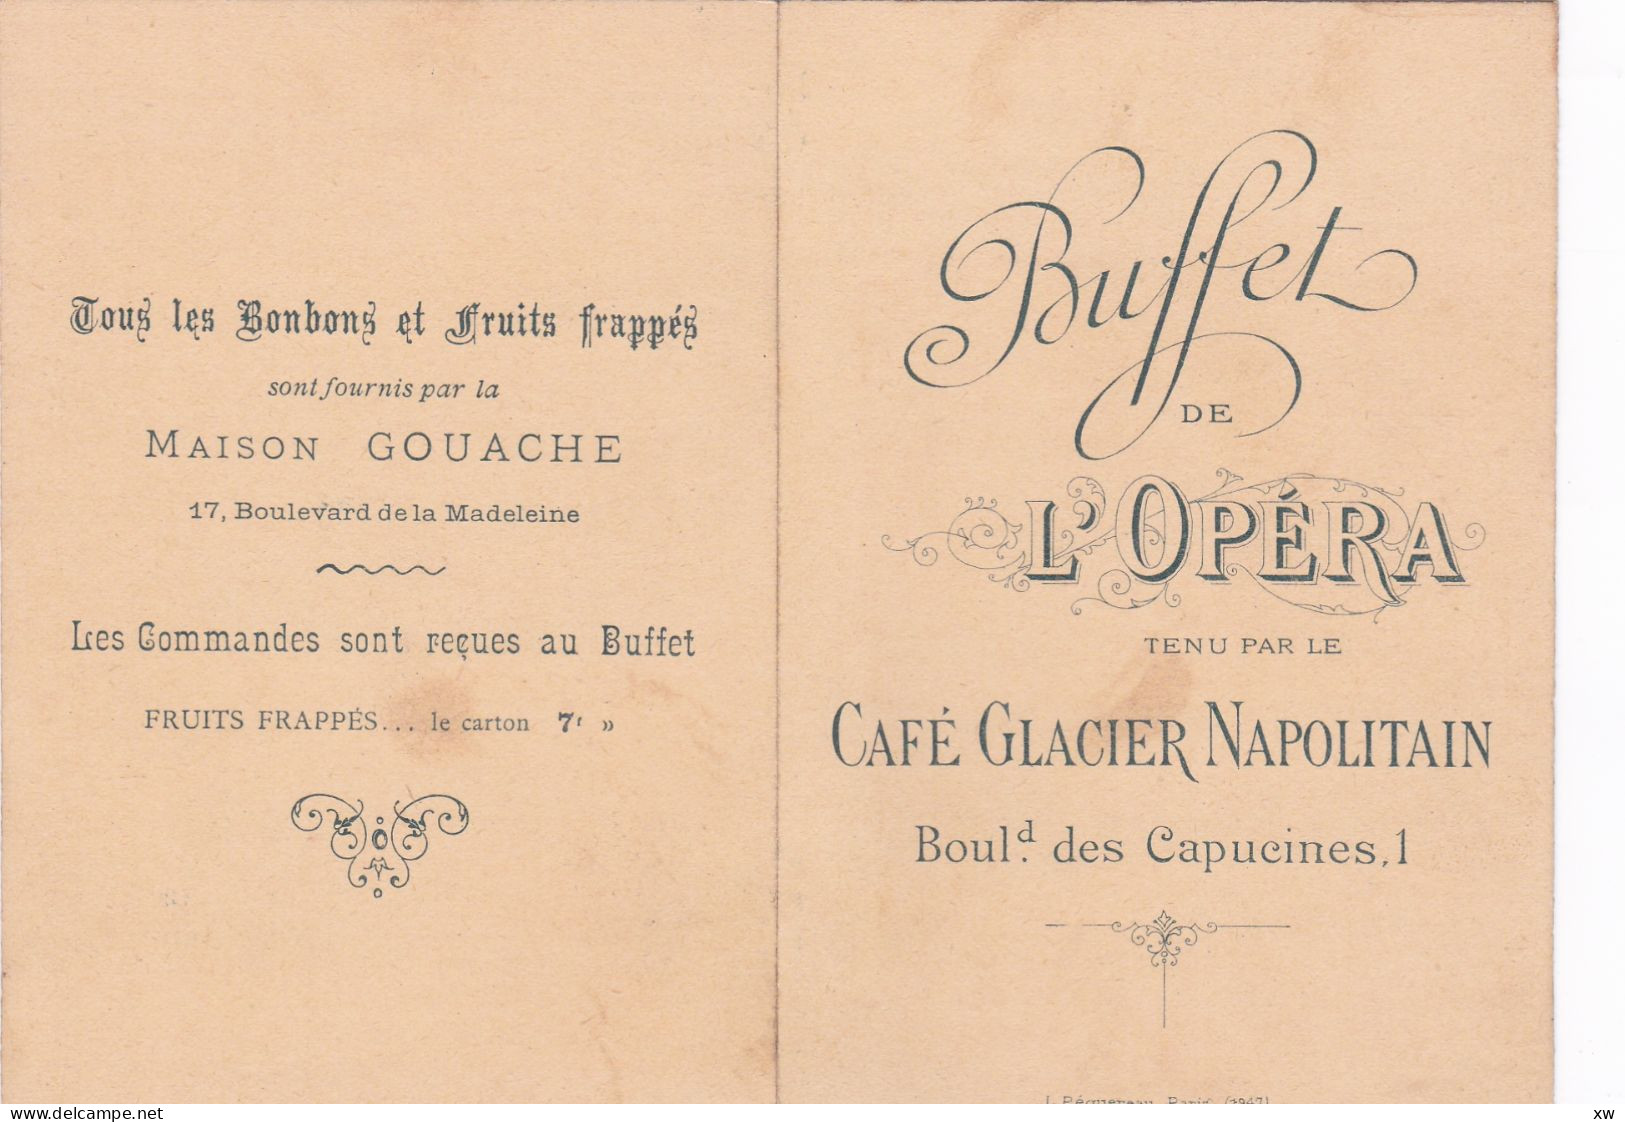 PARIS -75002- TARIF DES CONSOMMATIONS - Buffet De L'Opéra - Café-Glacier-Napolitain Bd Des Capucines -19-05-24 - Werbung